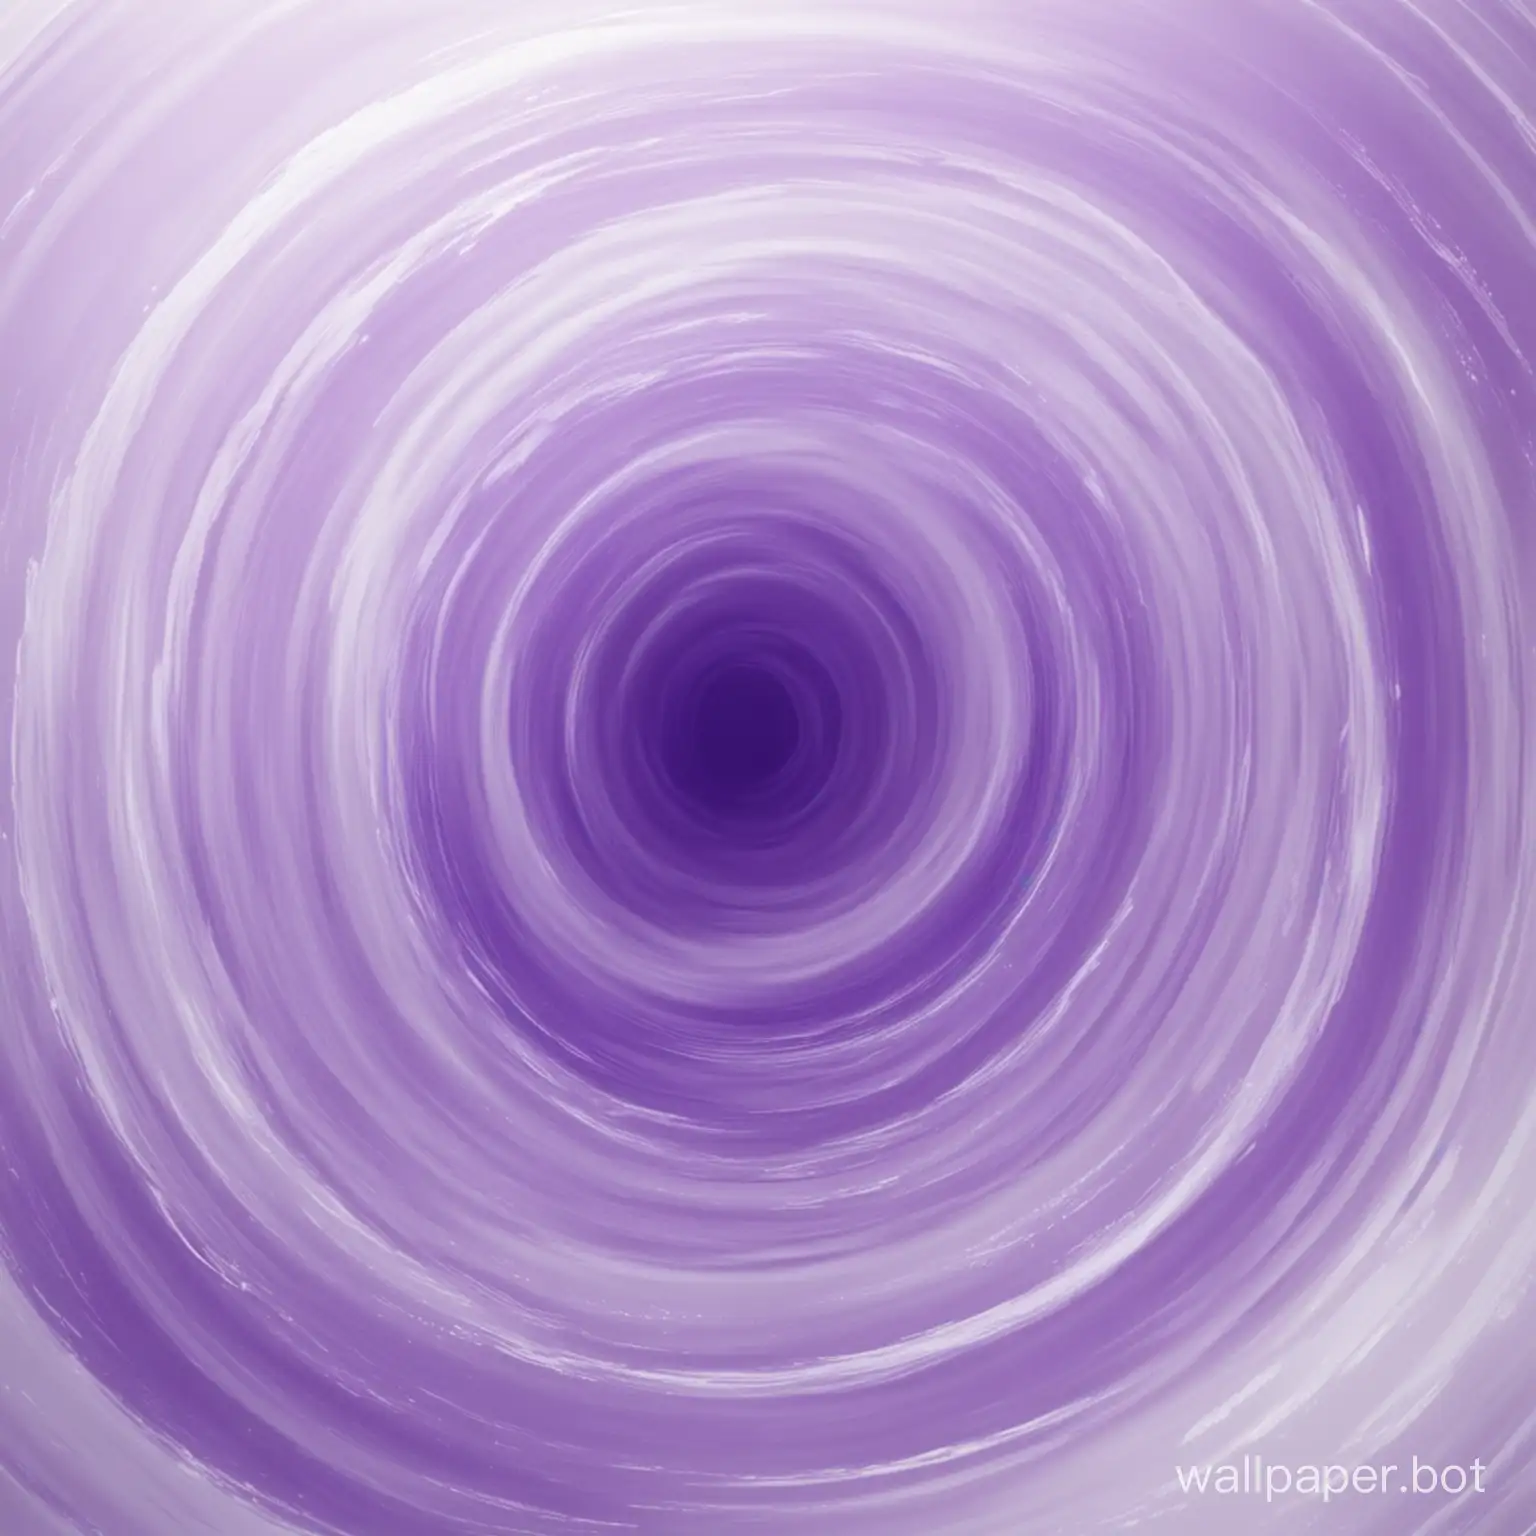 абстракция, размытые округлые размытые плавающие формы, формы мазков, белые холодные цвета с лёгкими оттенками фиолетового, размытое, смазанное изображение 4к